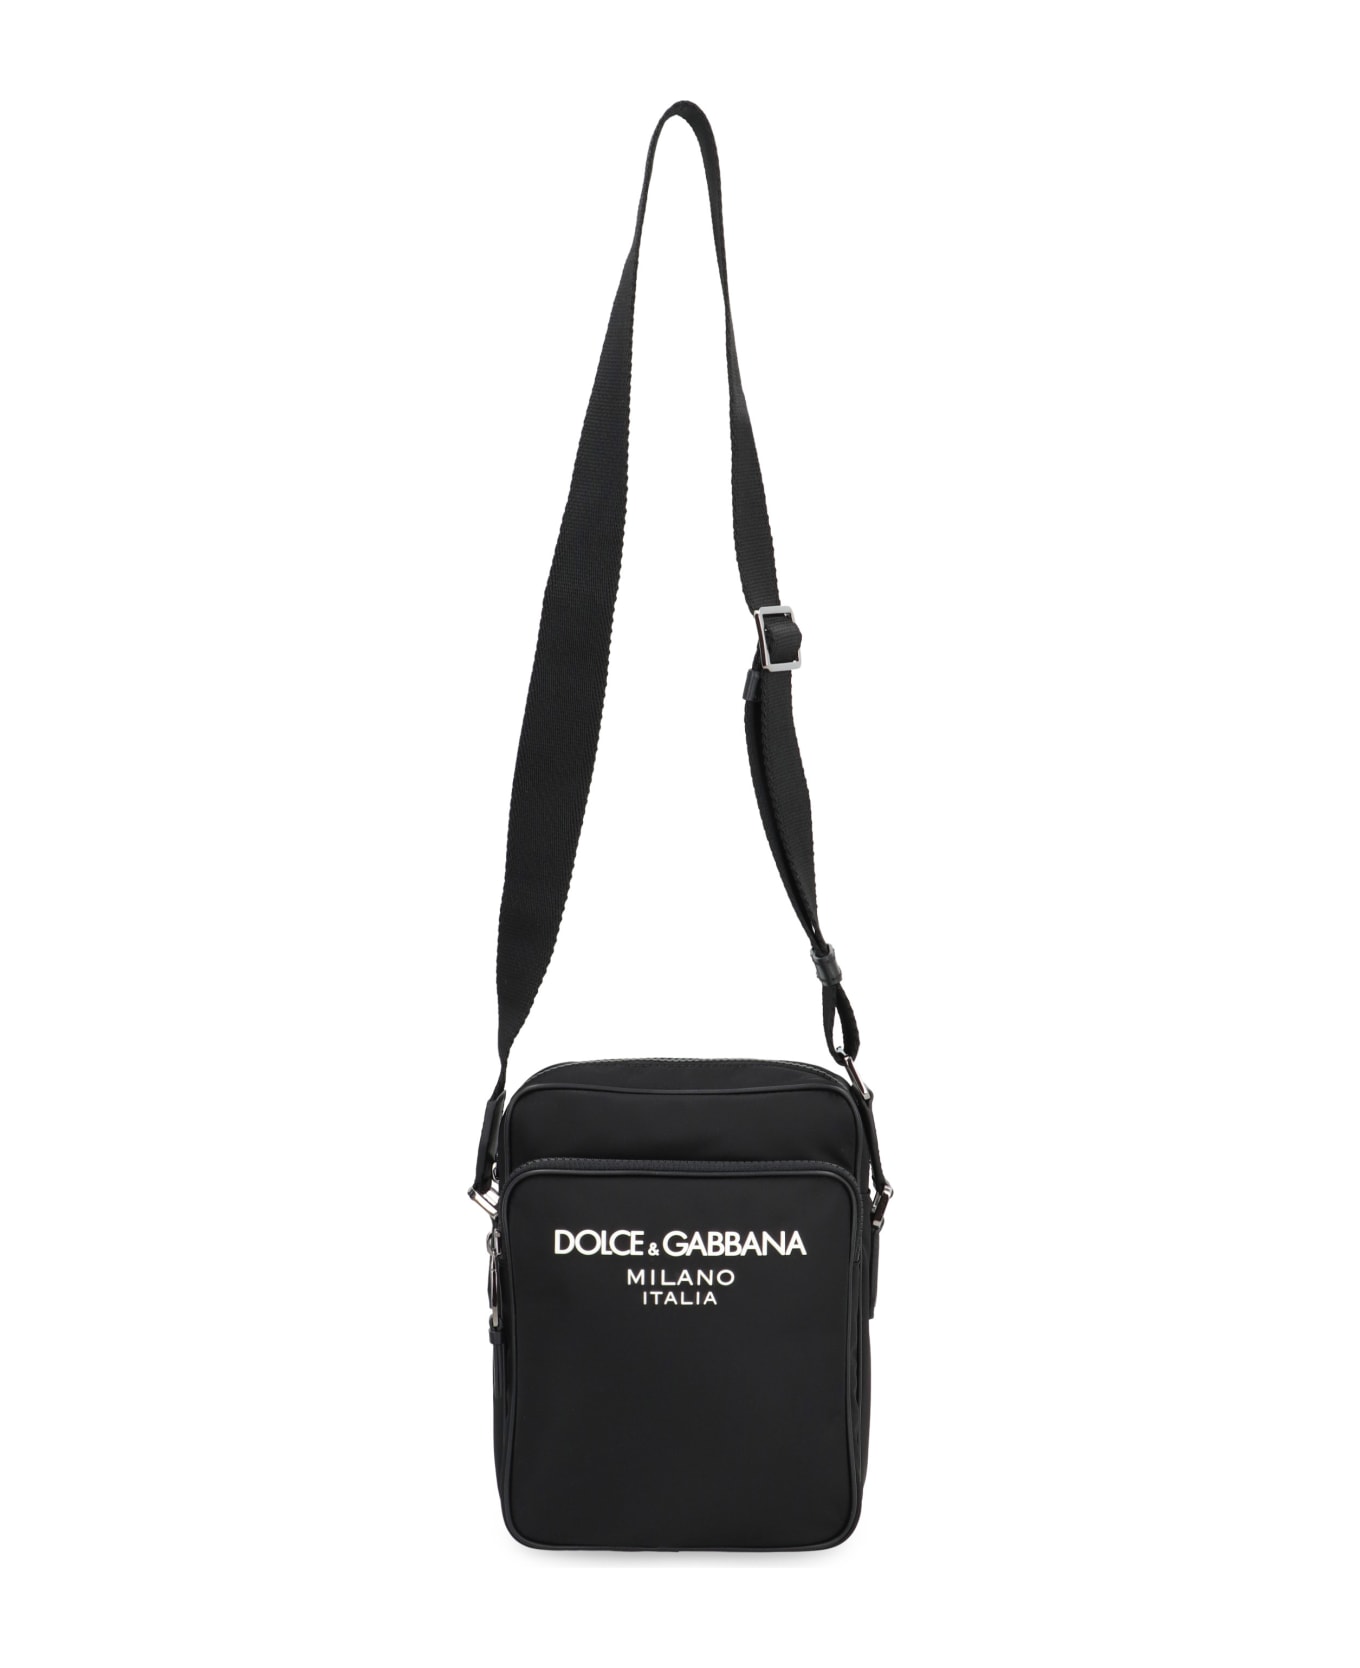 Dolce & Gabbana Nylon Messenger Bag - black